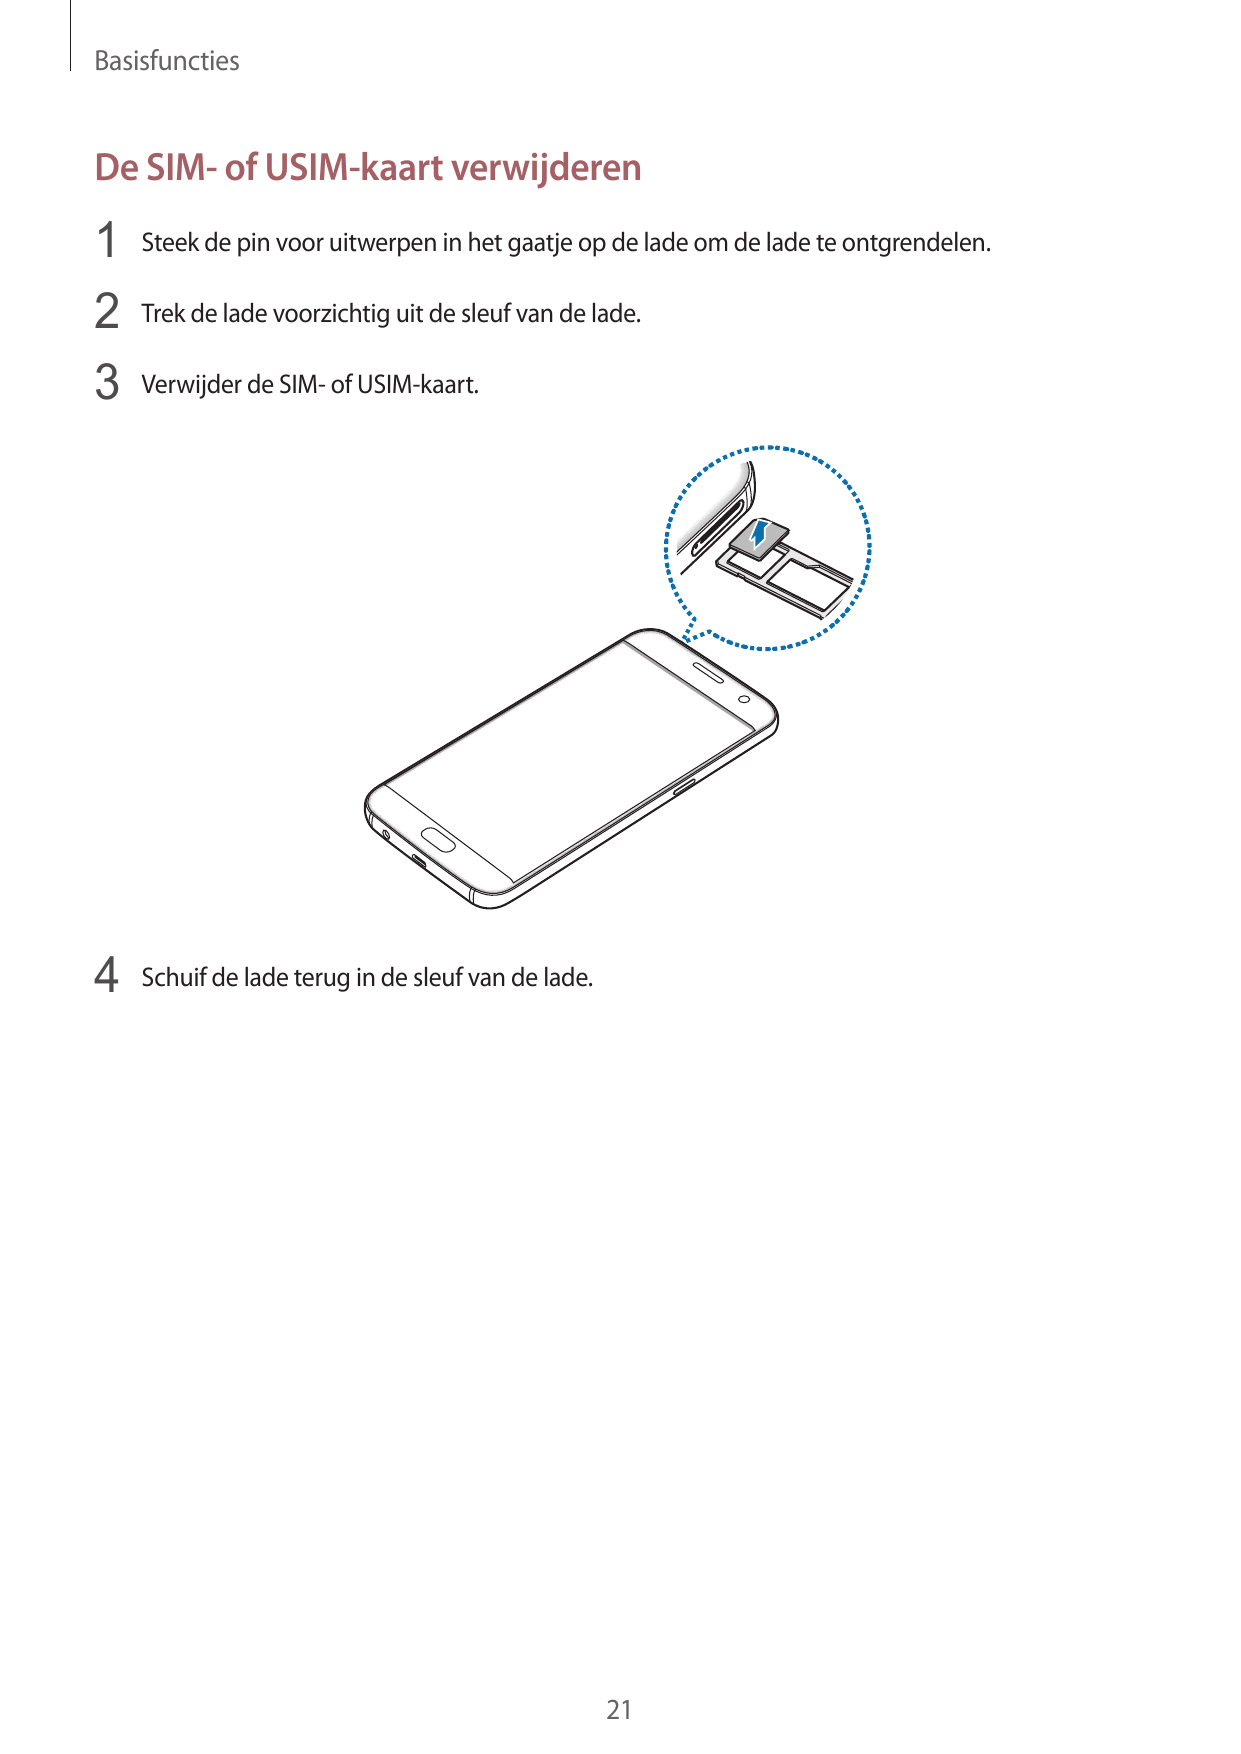 BasisfunctiesDe SIM- of USIM-kaart verwijderen1 Steek de pin voor uitwerpen in het gaatje op de lade om de lade te ontgrendelen.